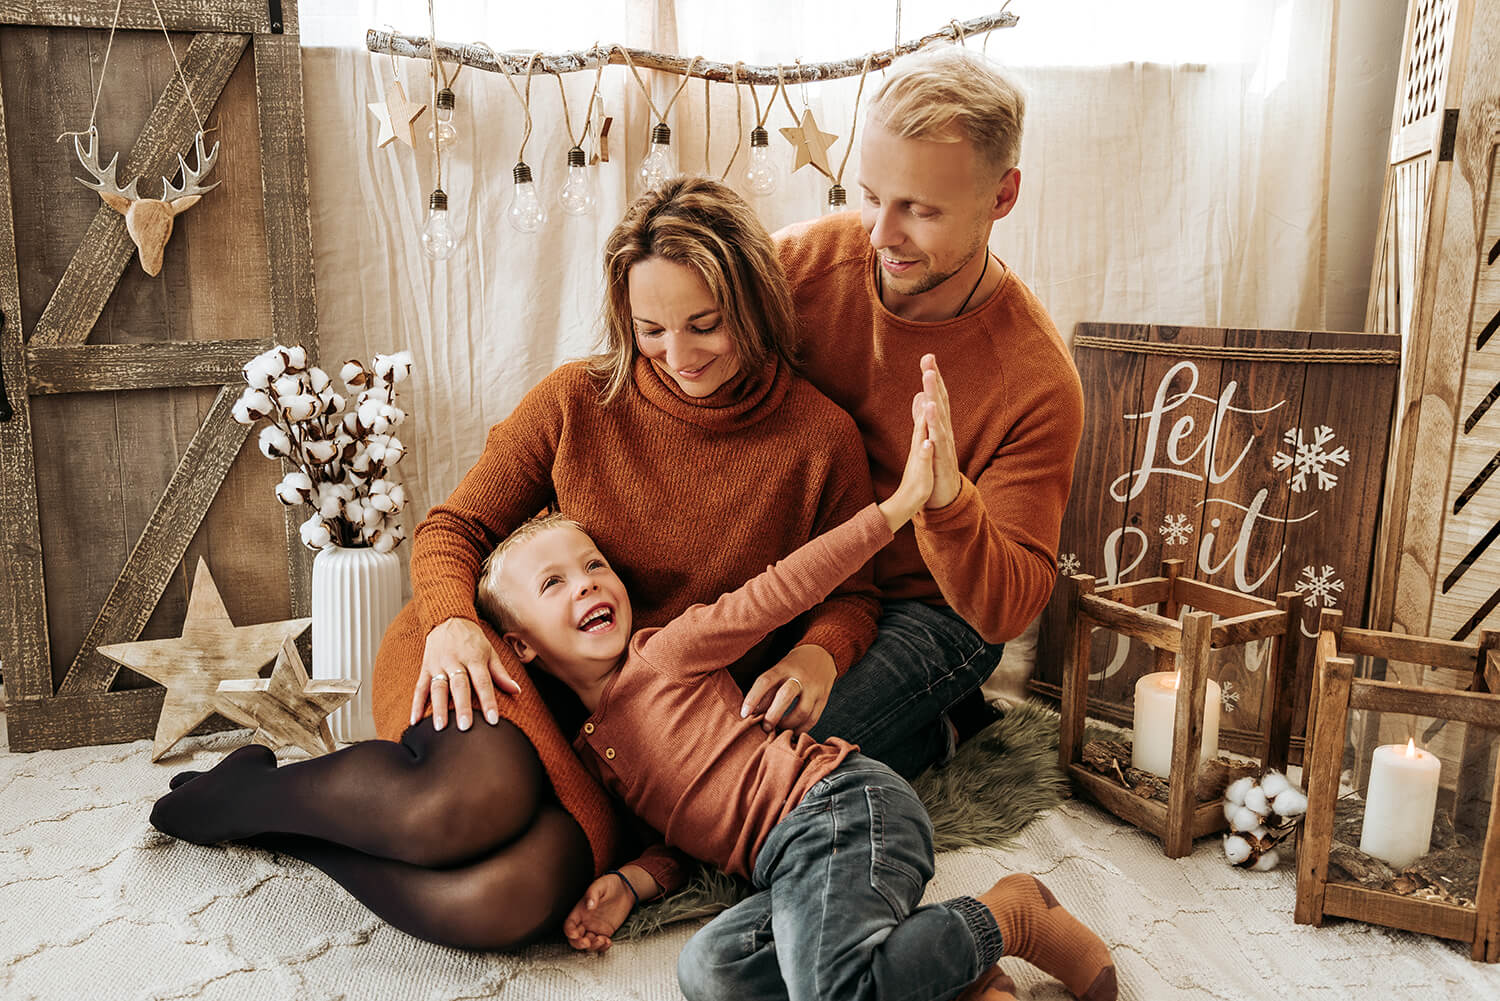 Weihnachts Fotografie Familienfoto Bildgefühle Odenwald